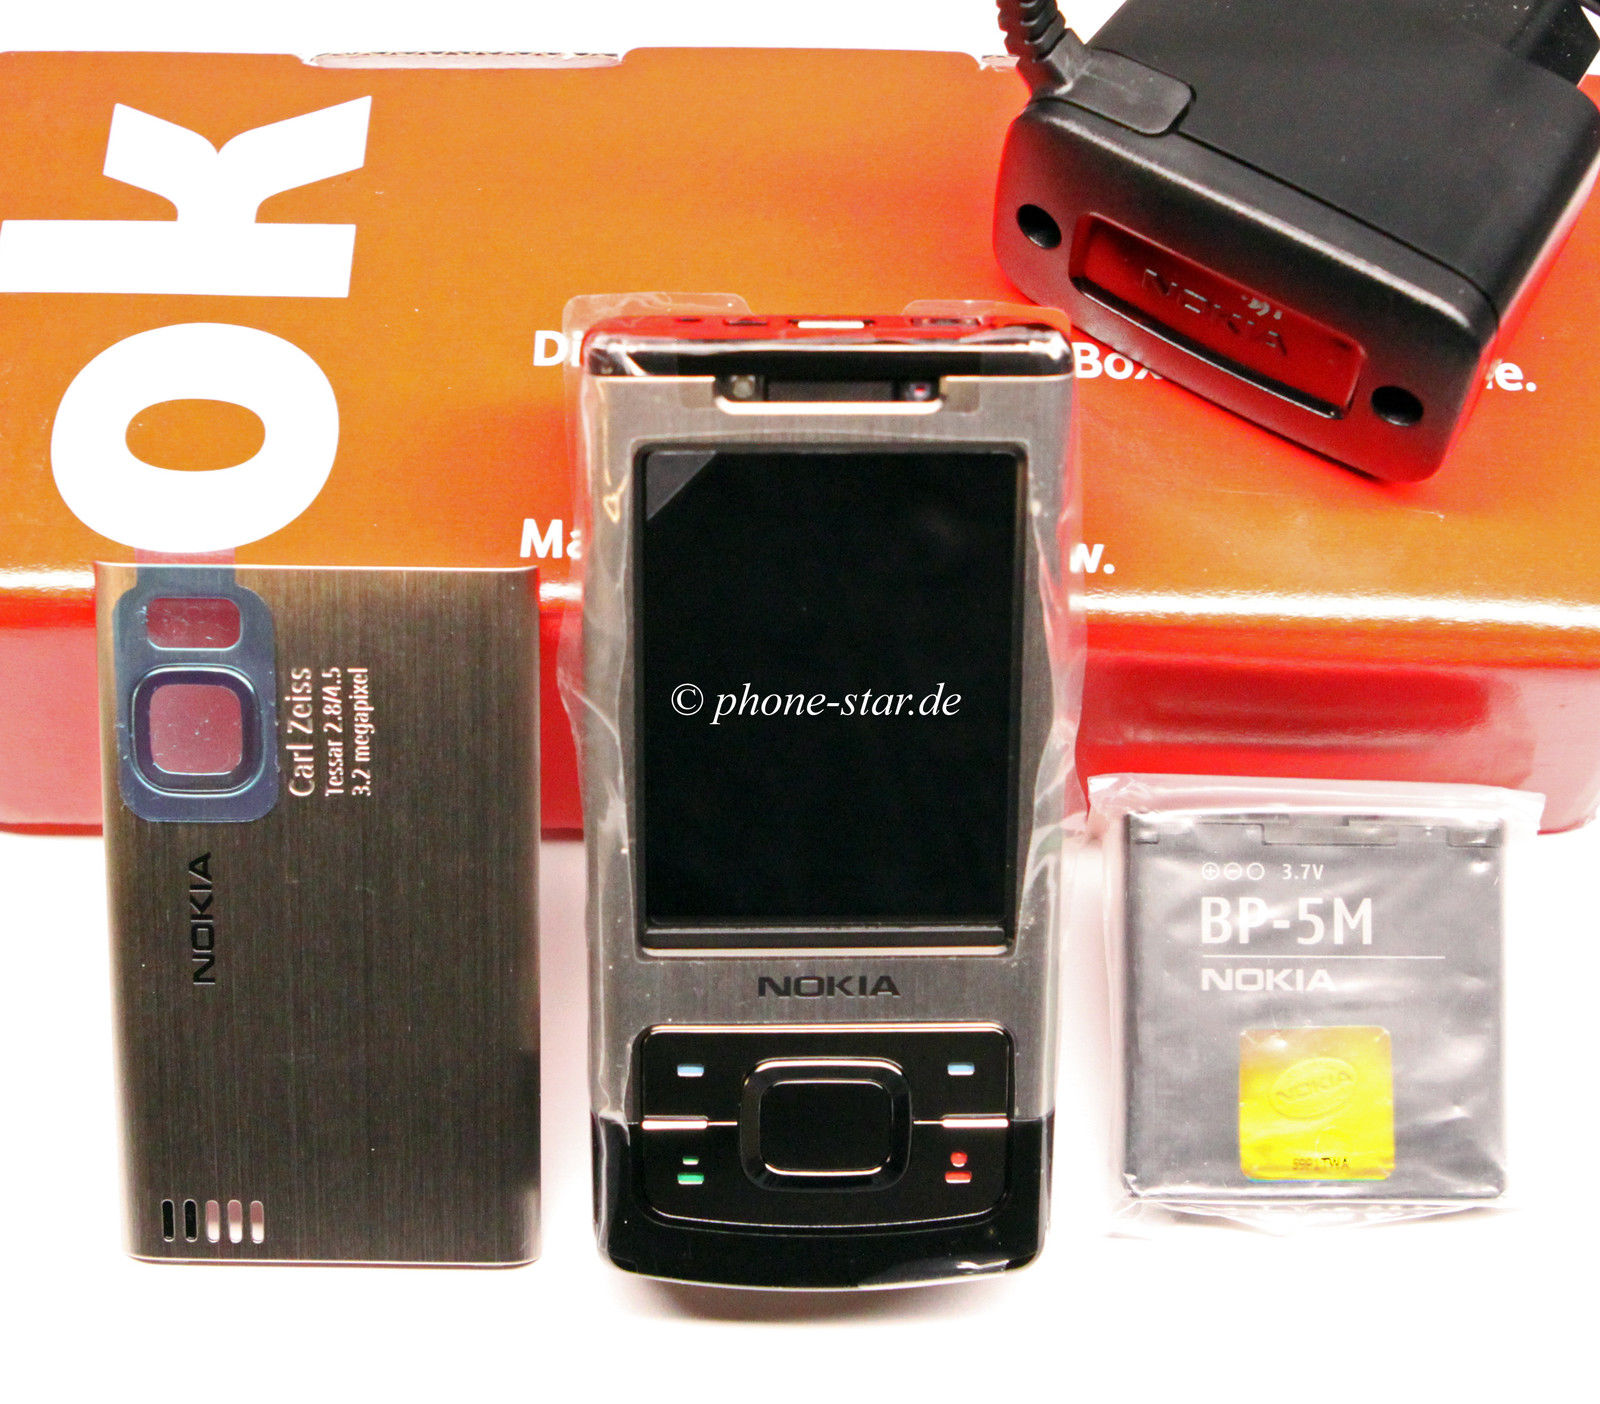 Nokia 6500 slide Handy Smartphone Quad-Band UMTS Bluetooth Kamera MP3 Neu New